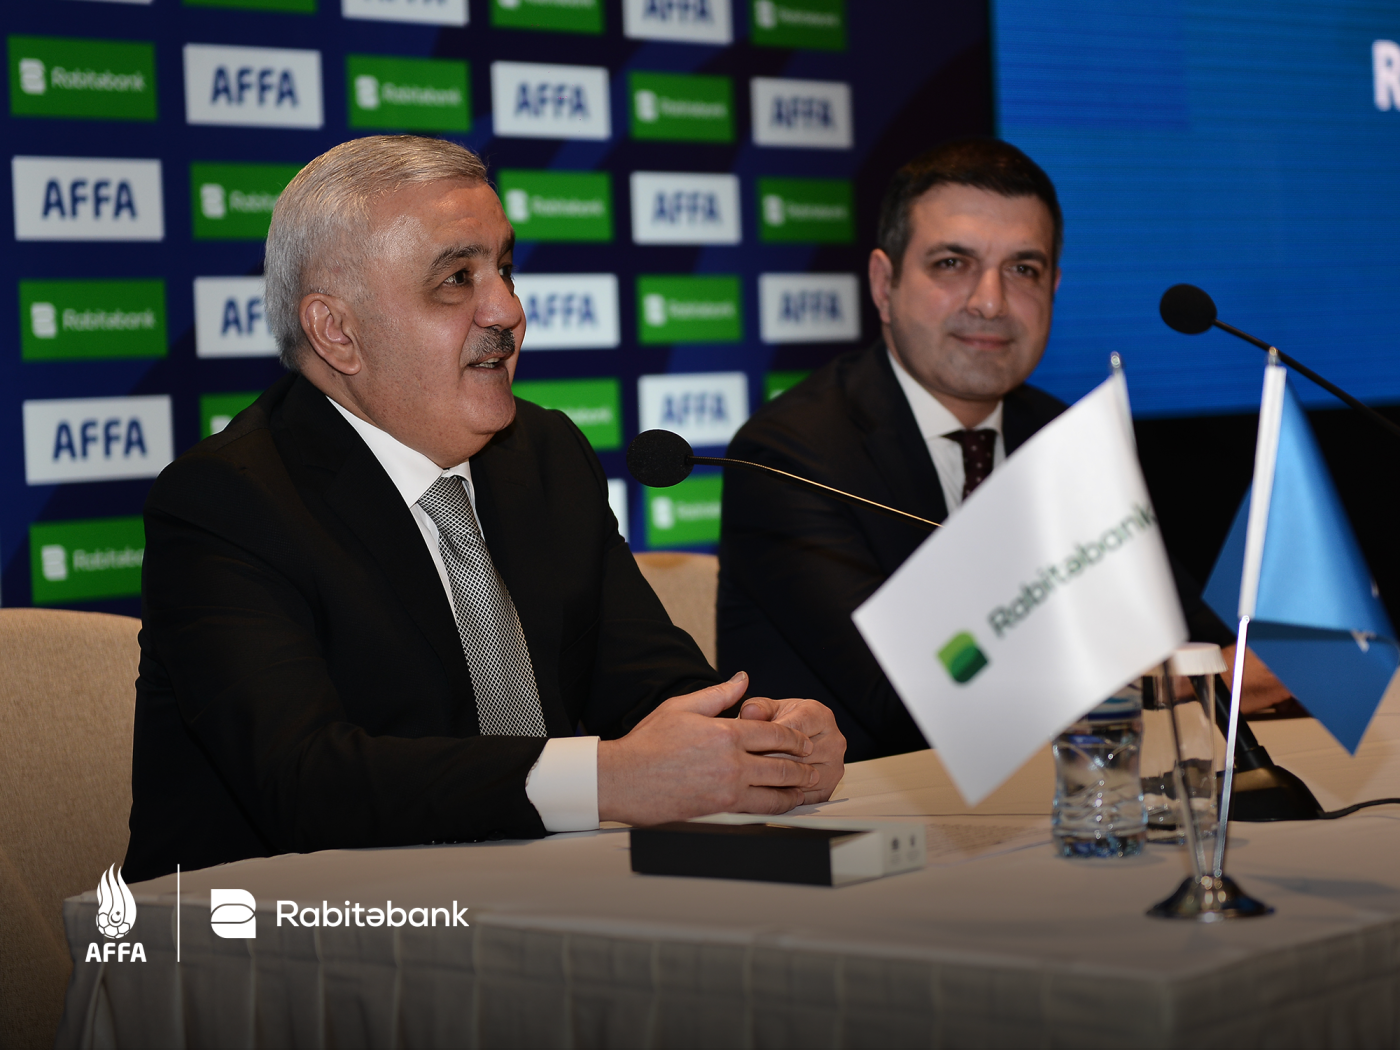 "Rabitəbank" və AFFA arasında sponsorluq müqaviləsi imzalanıb - FOTOLAR